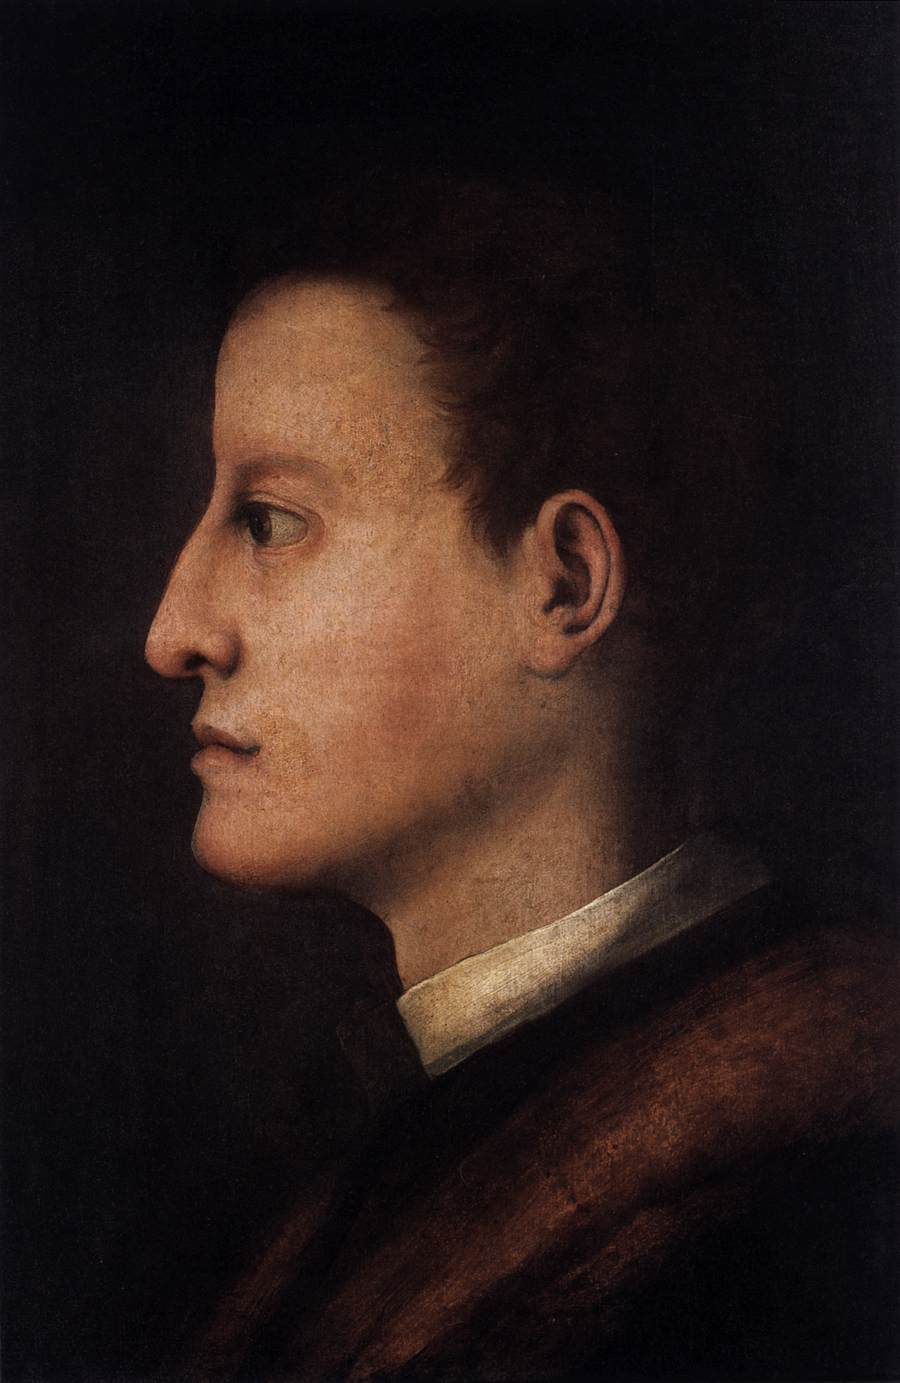 Medici'den Cosimo I